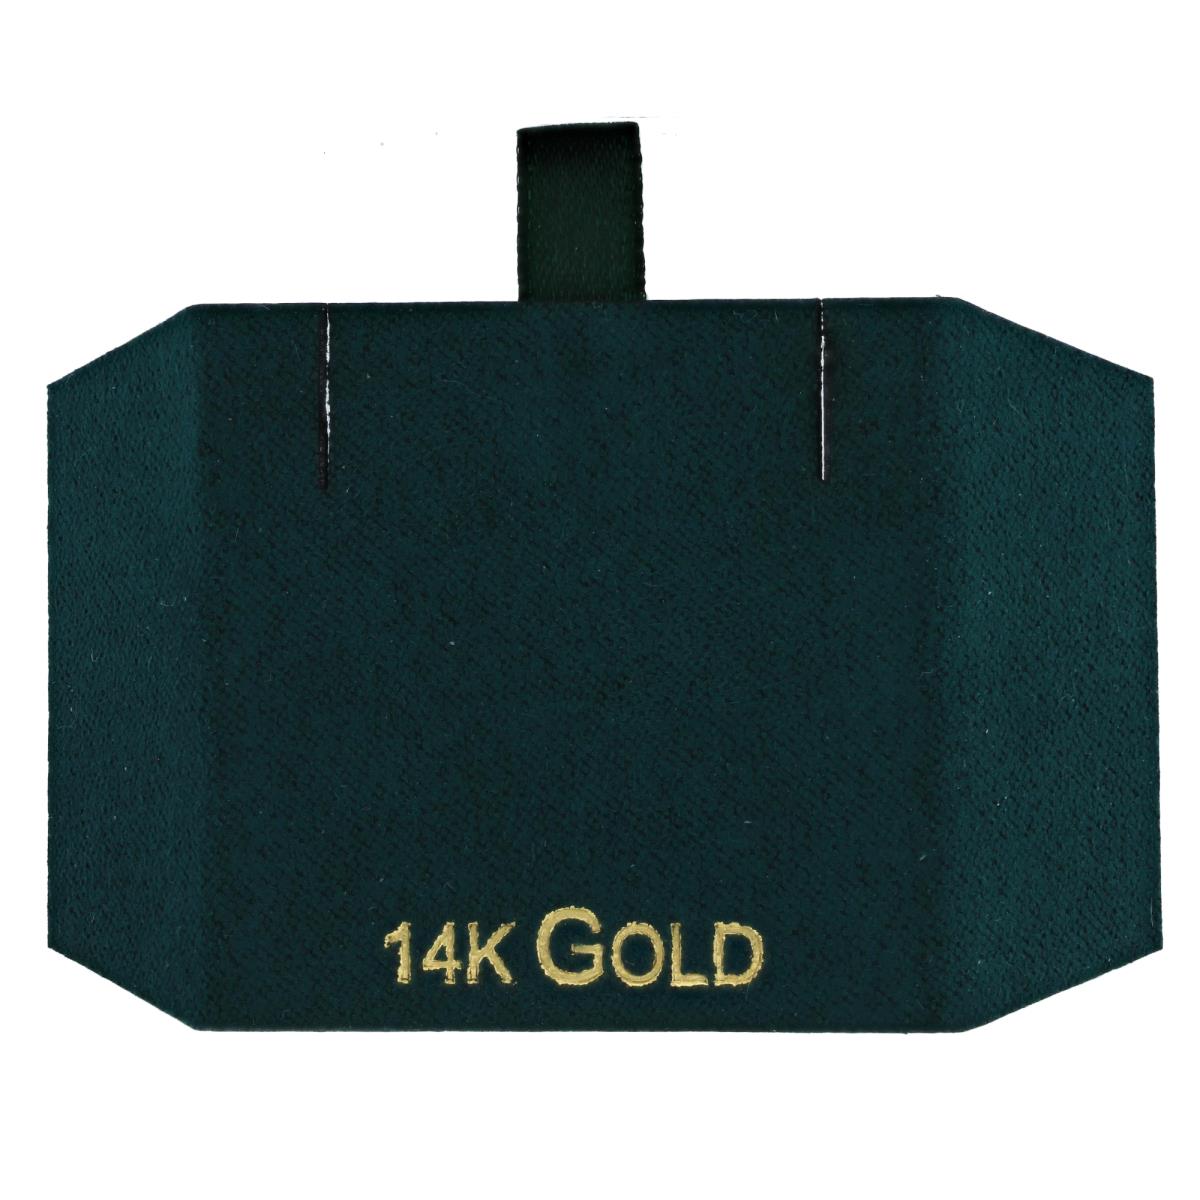 Green 14K Gold, Gold Foil Necklace Insert (Box B06-159/Green/D)